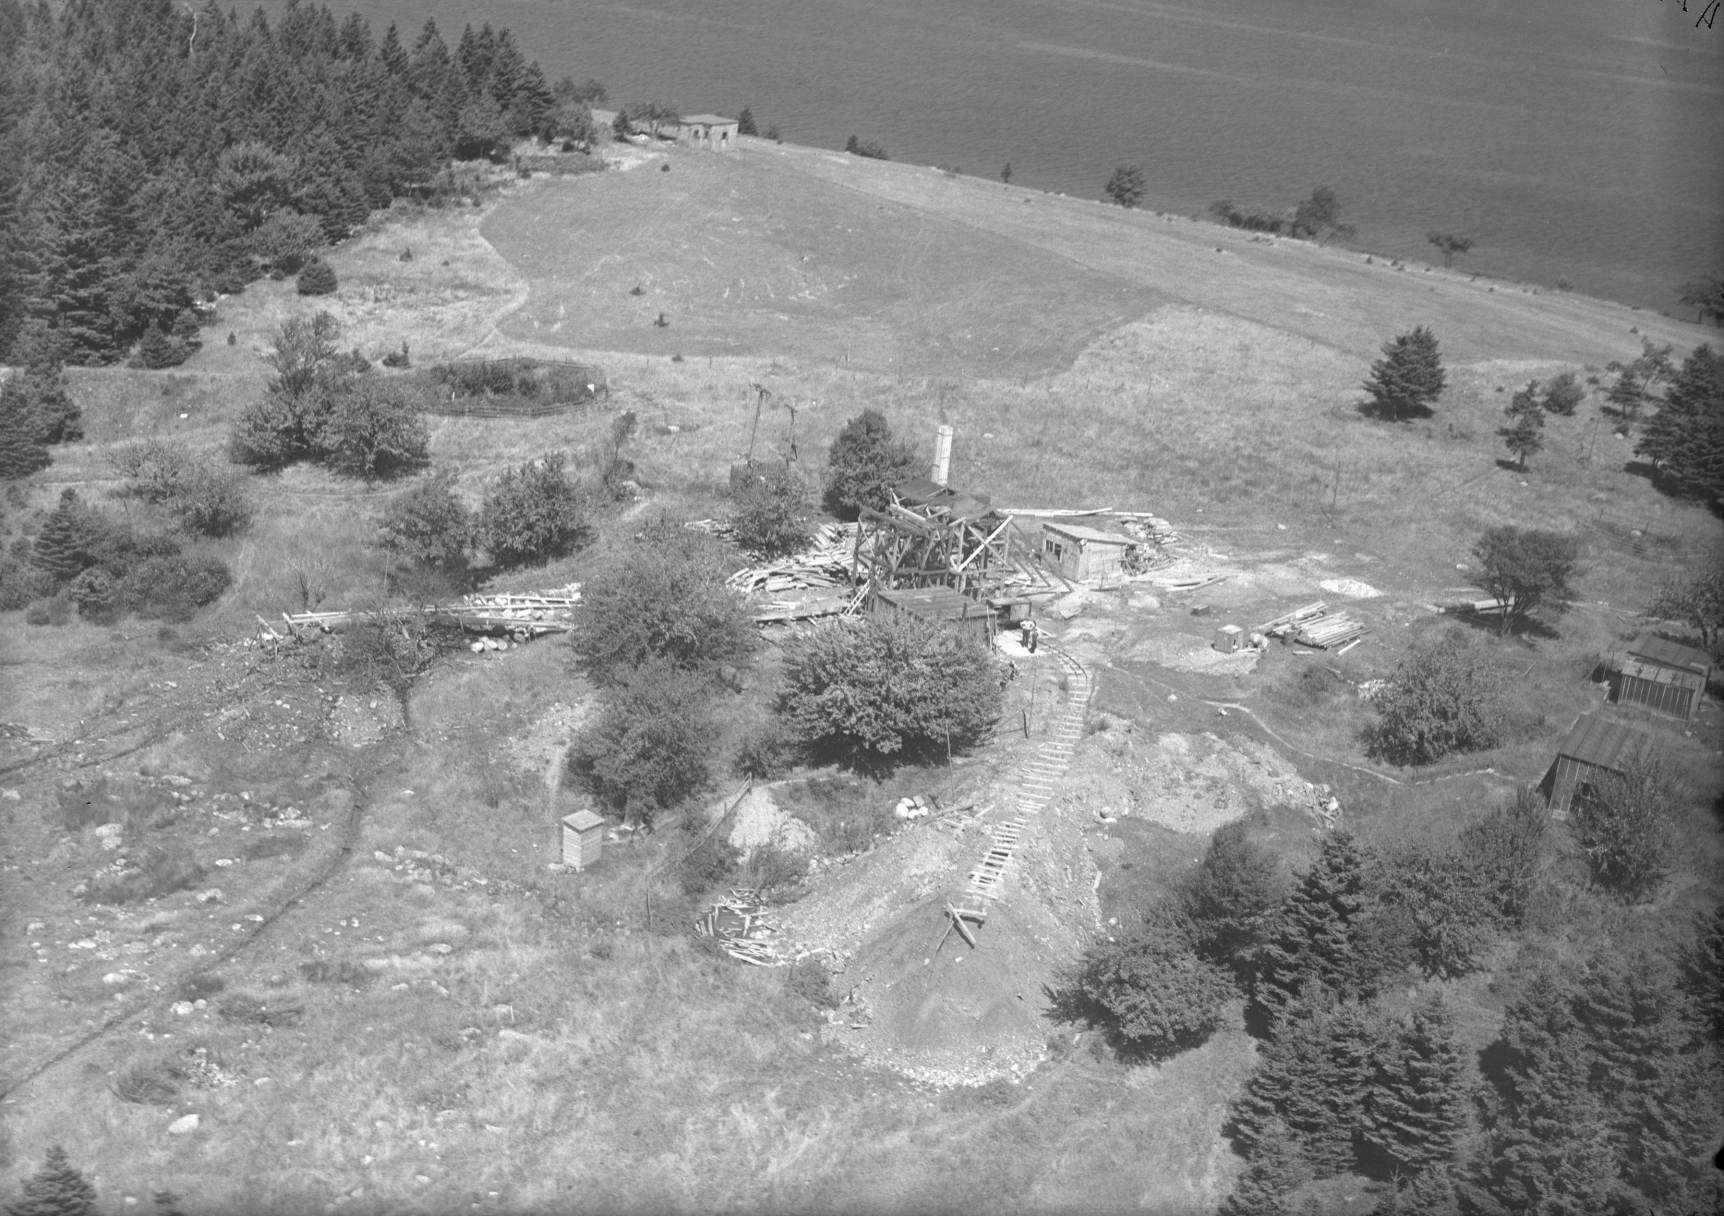 Fotografia bola urobená v auguste 1931 na Oak Island v Novom Škótsku v Kanade. Zobrazoval rôzne výkopy a stavby.